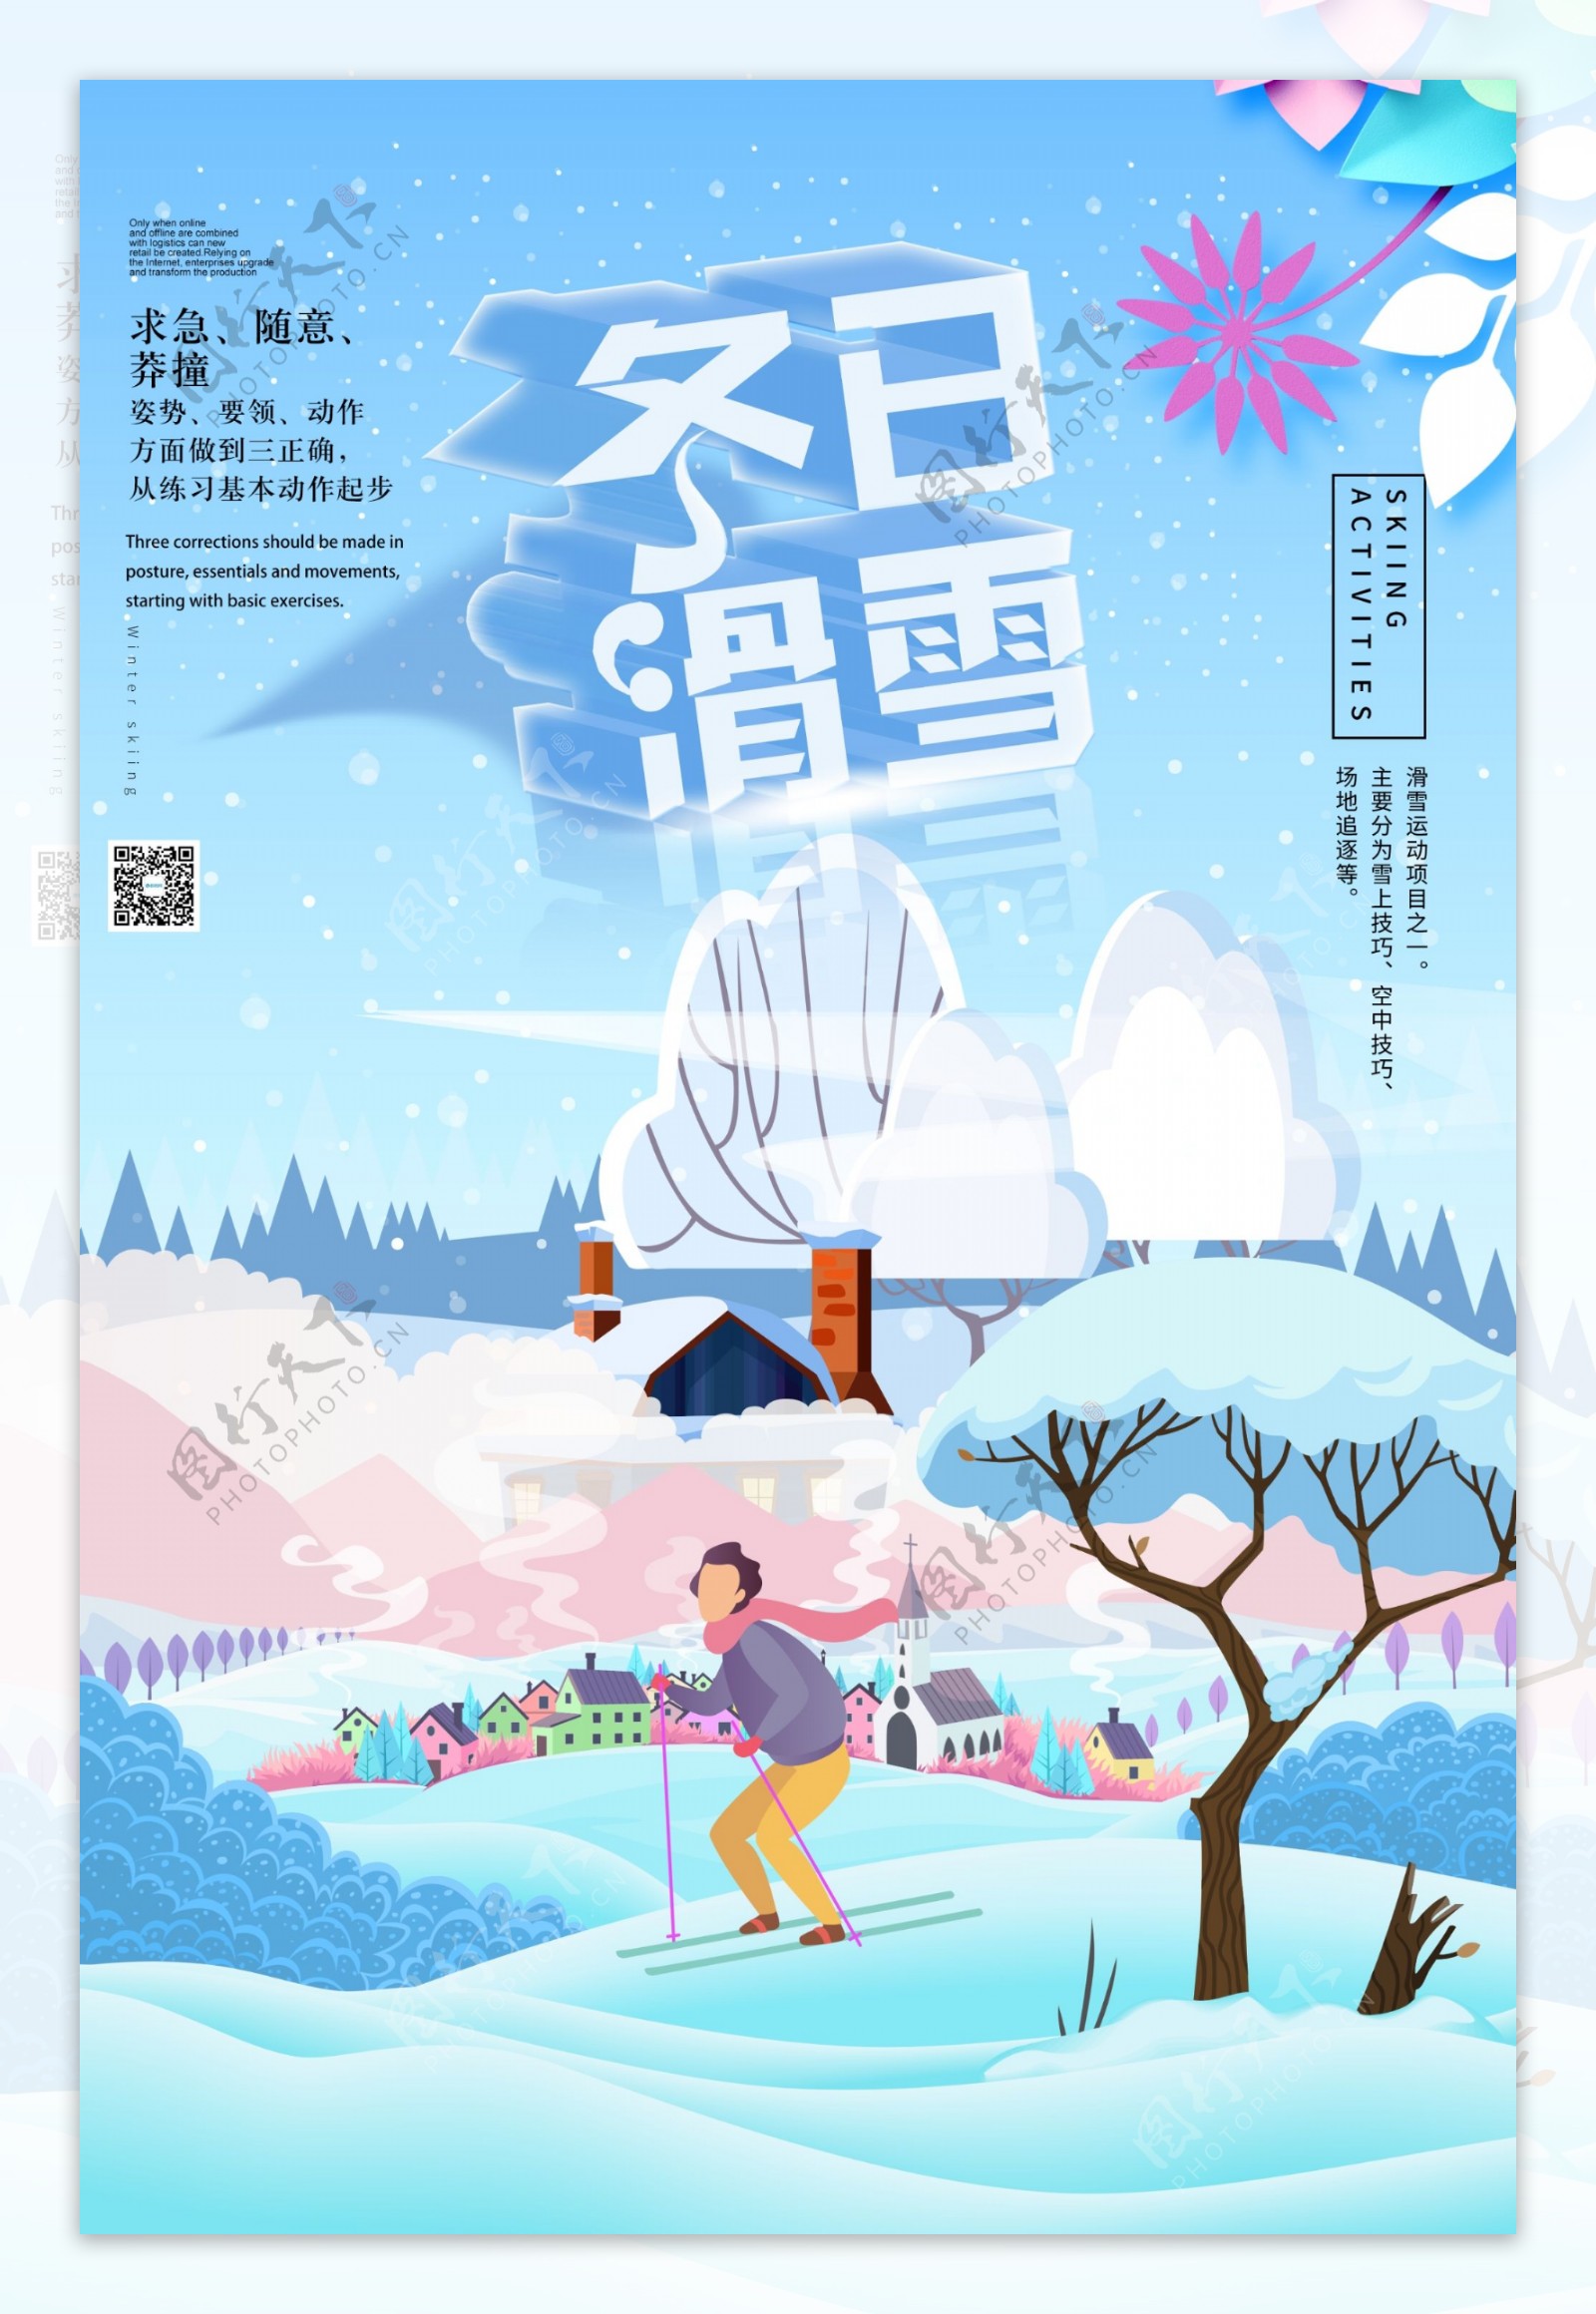 冬日滑雪运动海报设计